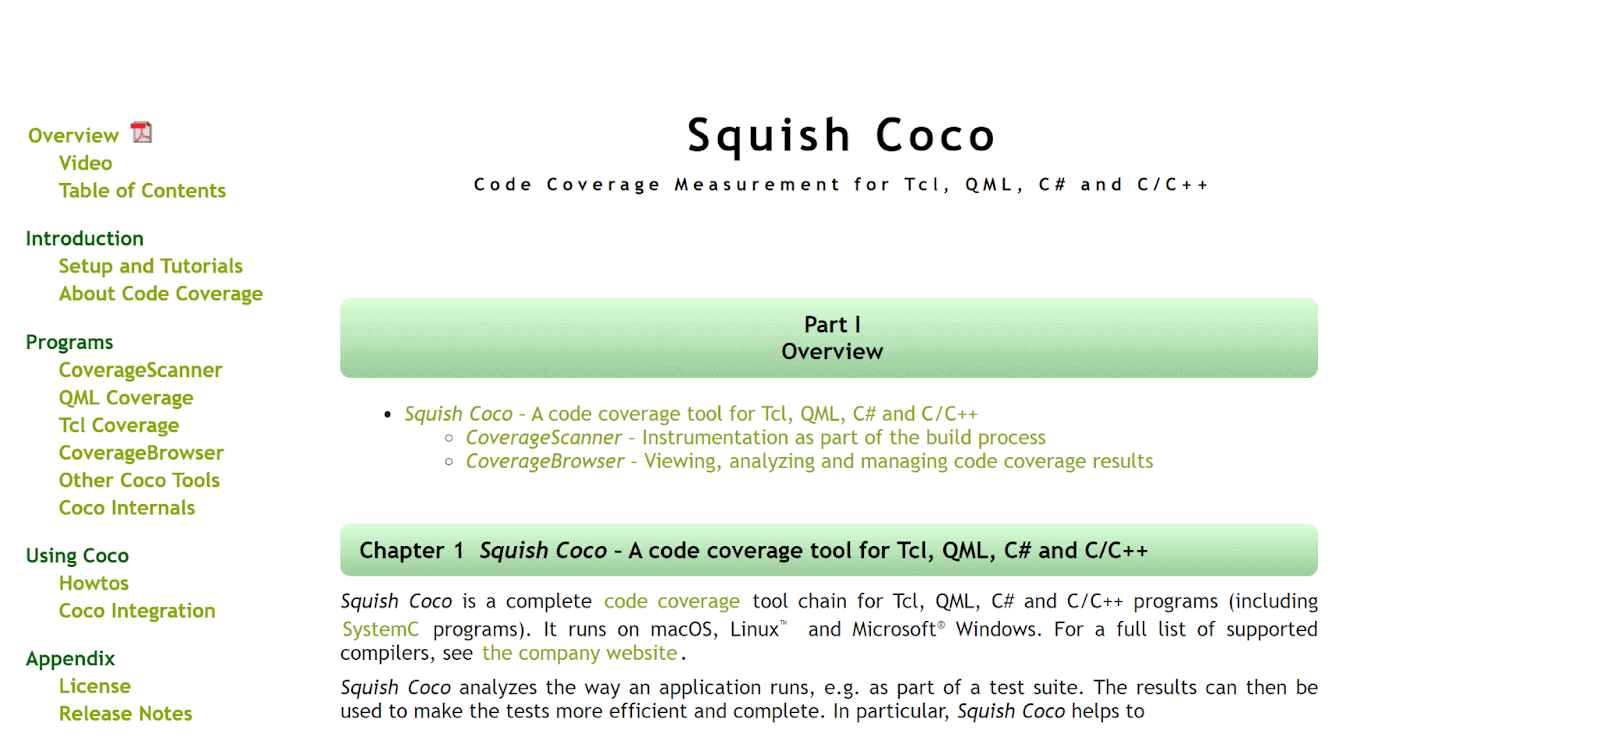 Squish Coco